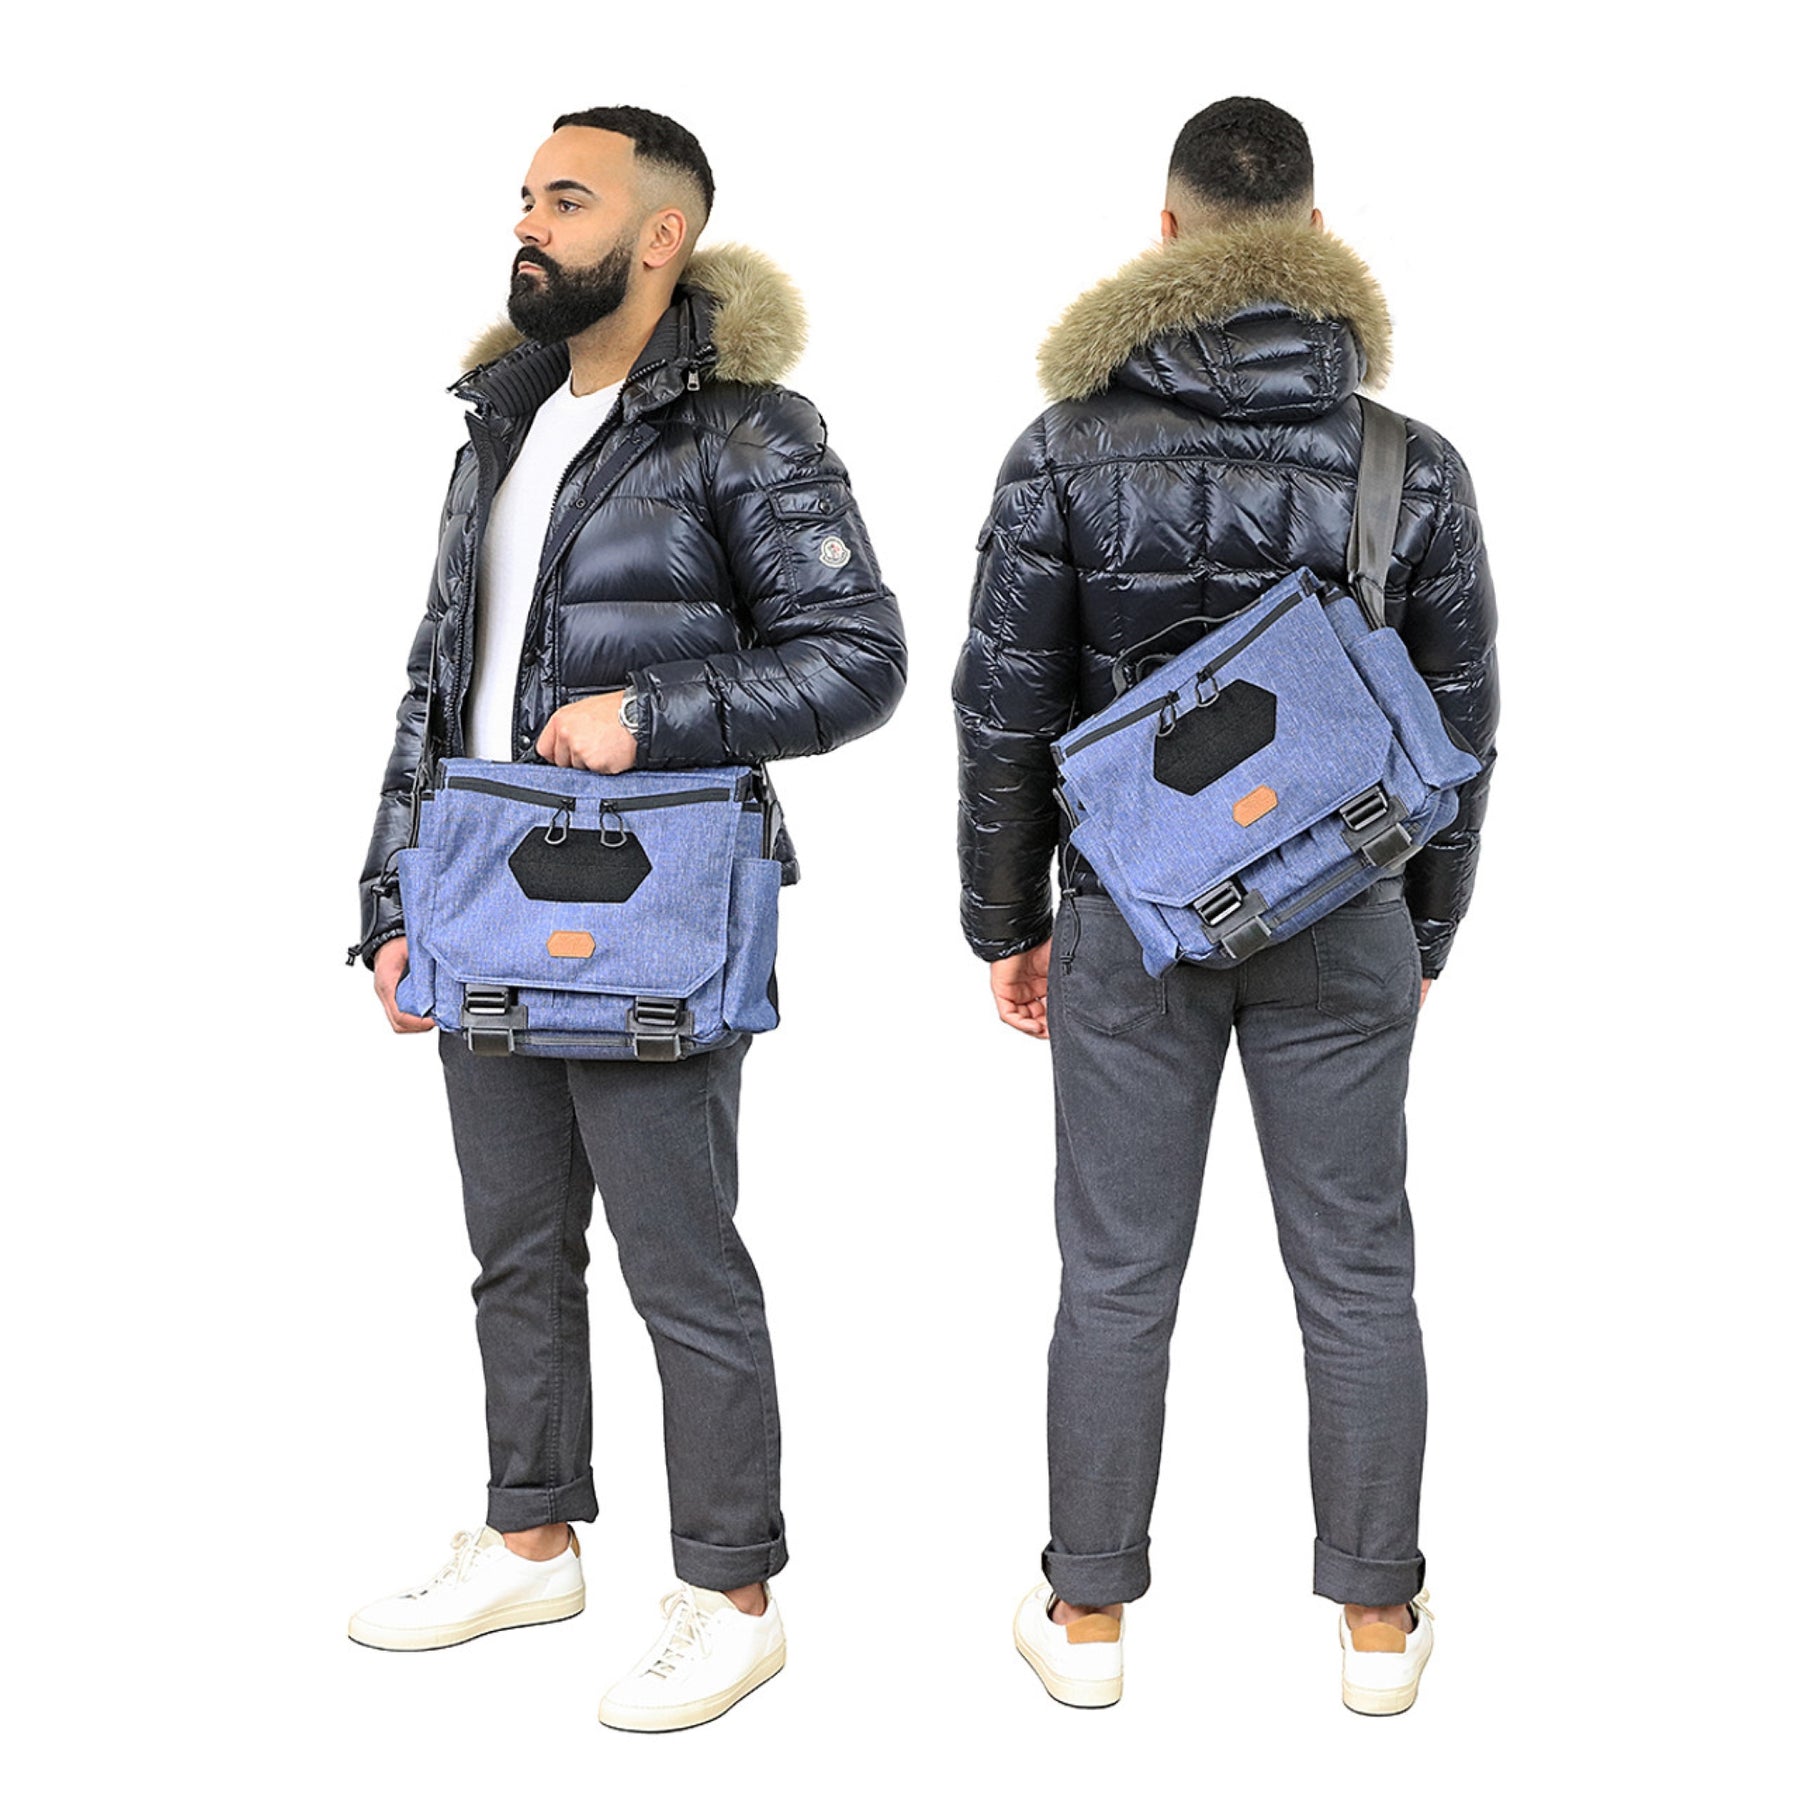 Vanquest | GOFER-12 Messenger Bag